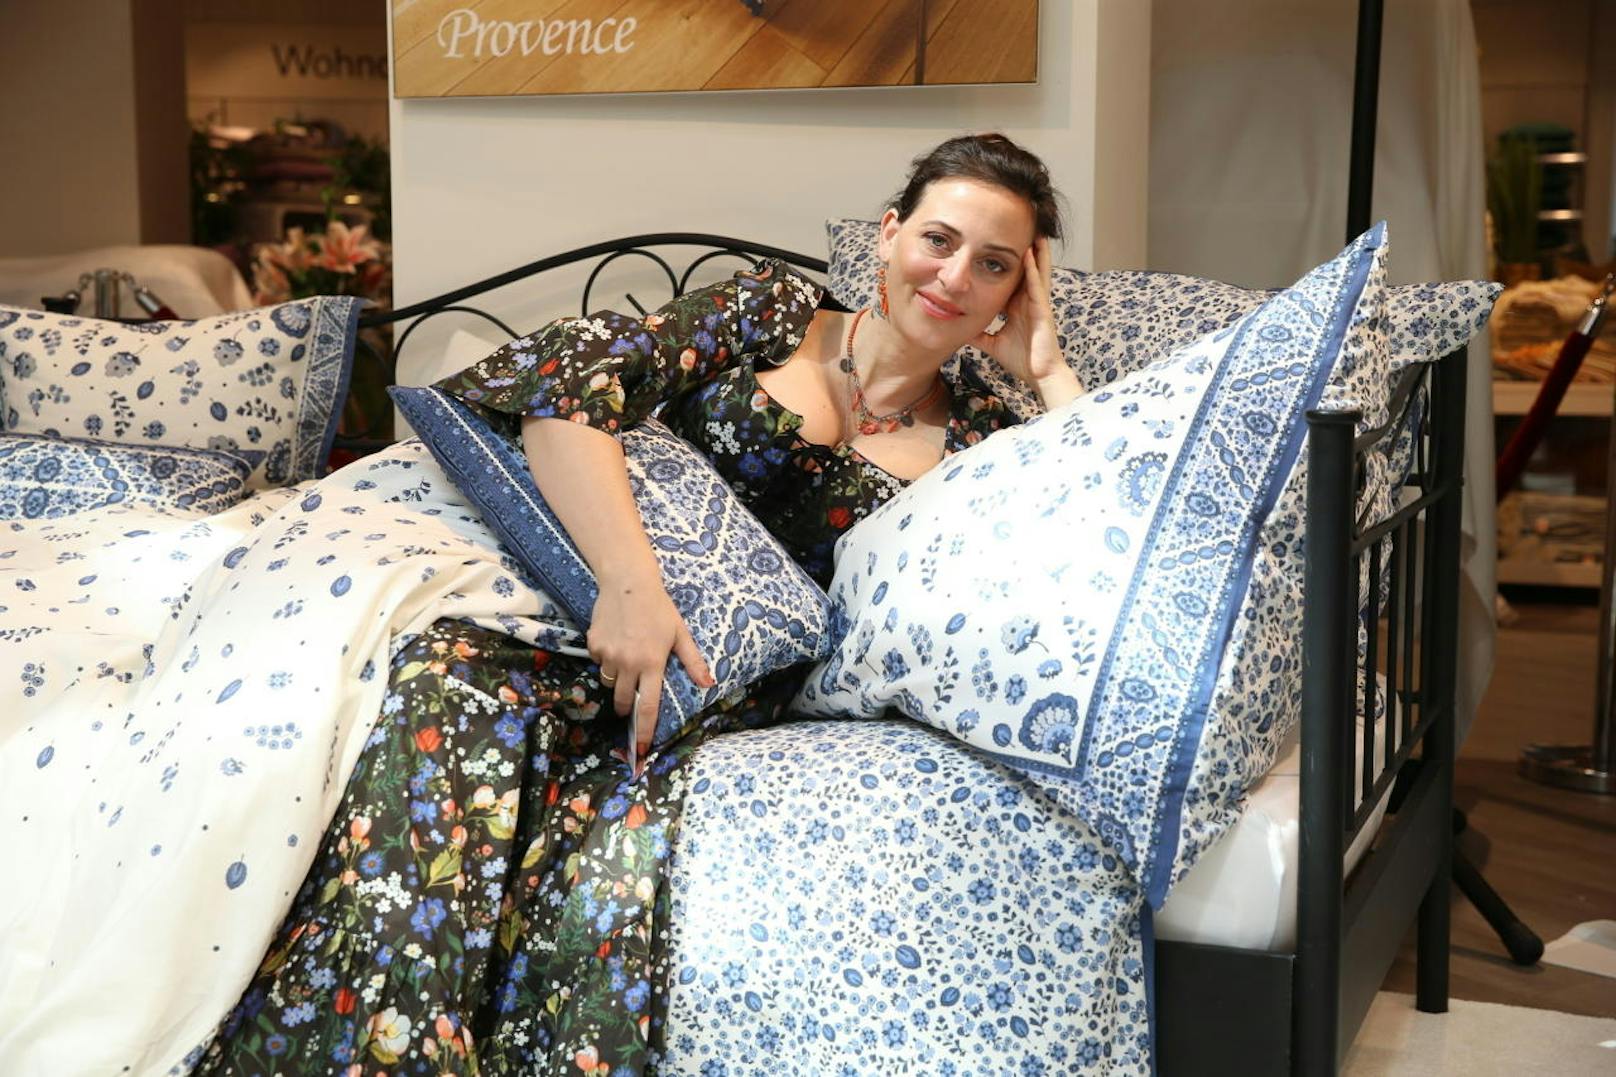 Die Blaue Bettwäsche-Serie heißt Provence. Eine Garnitur (Tuchent und Polster) kostet 104 Euro bzw 114 Euro (Übergröße)